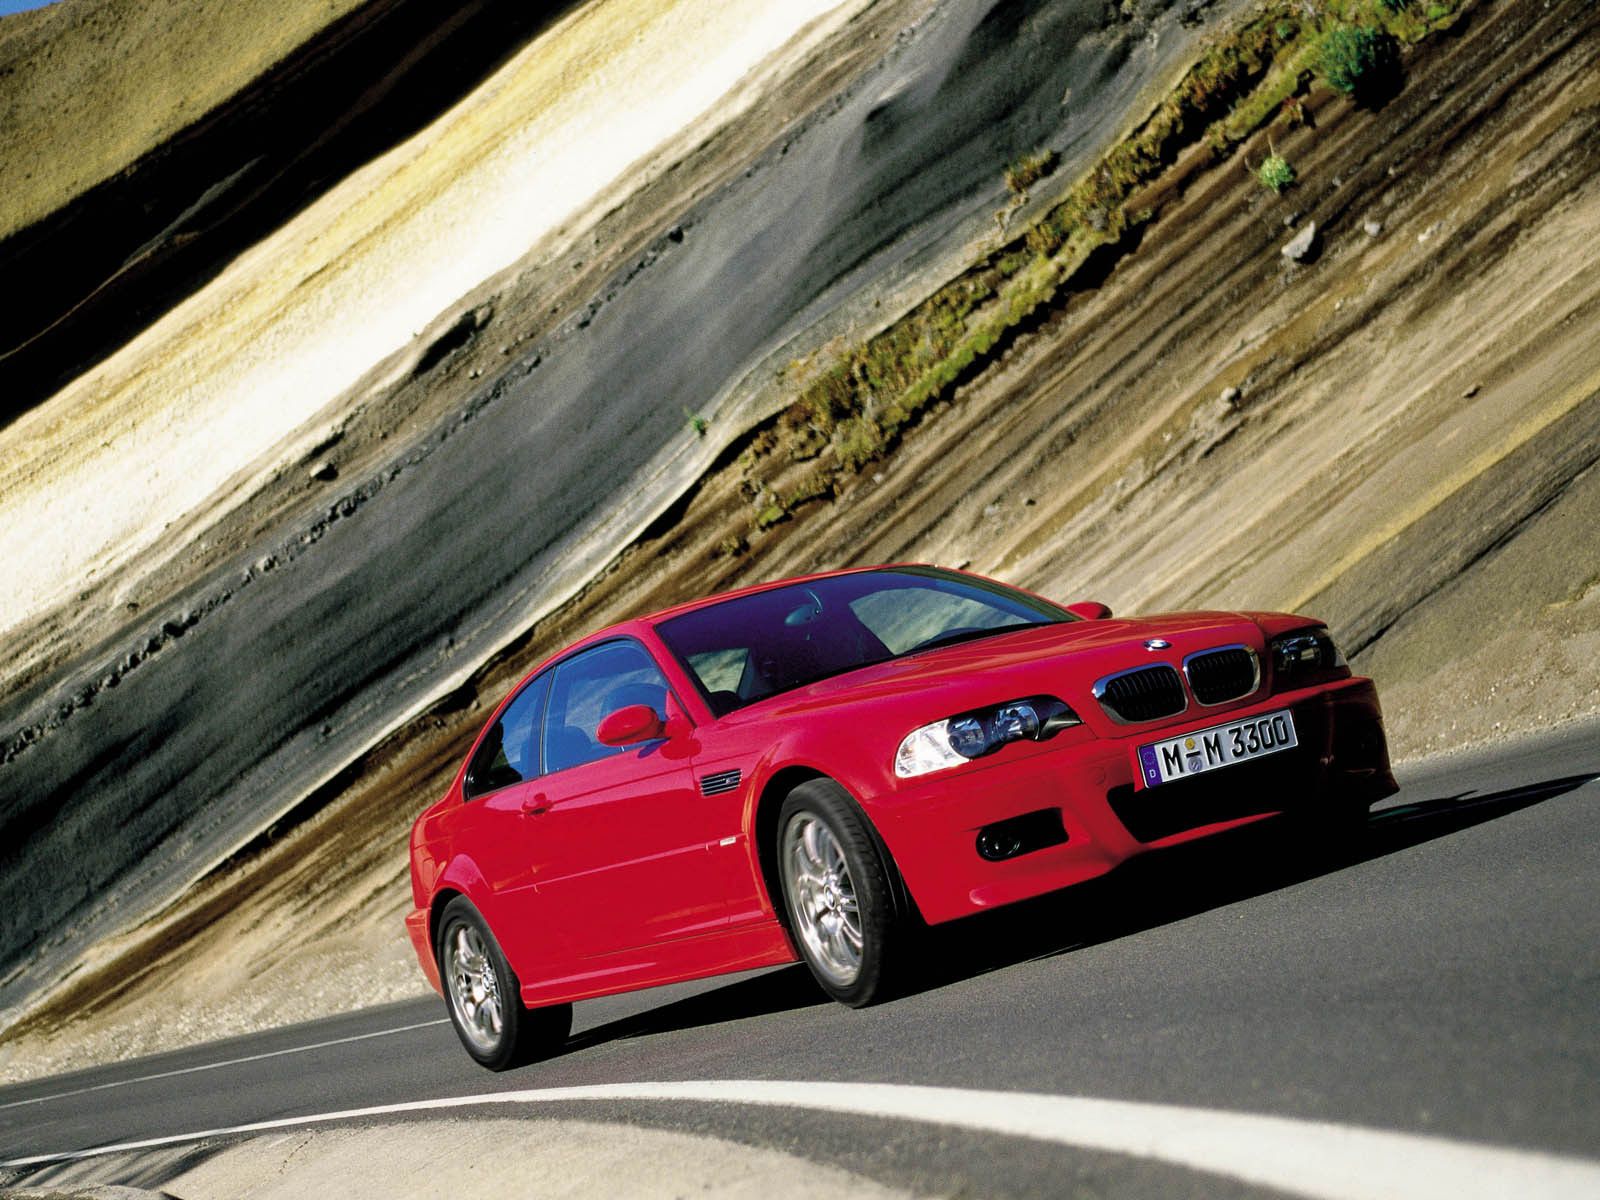 2001 - 2003 BMW M3 E46